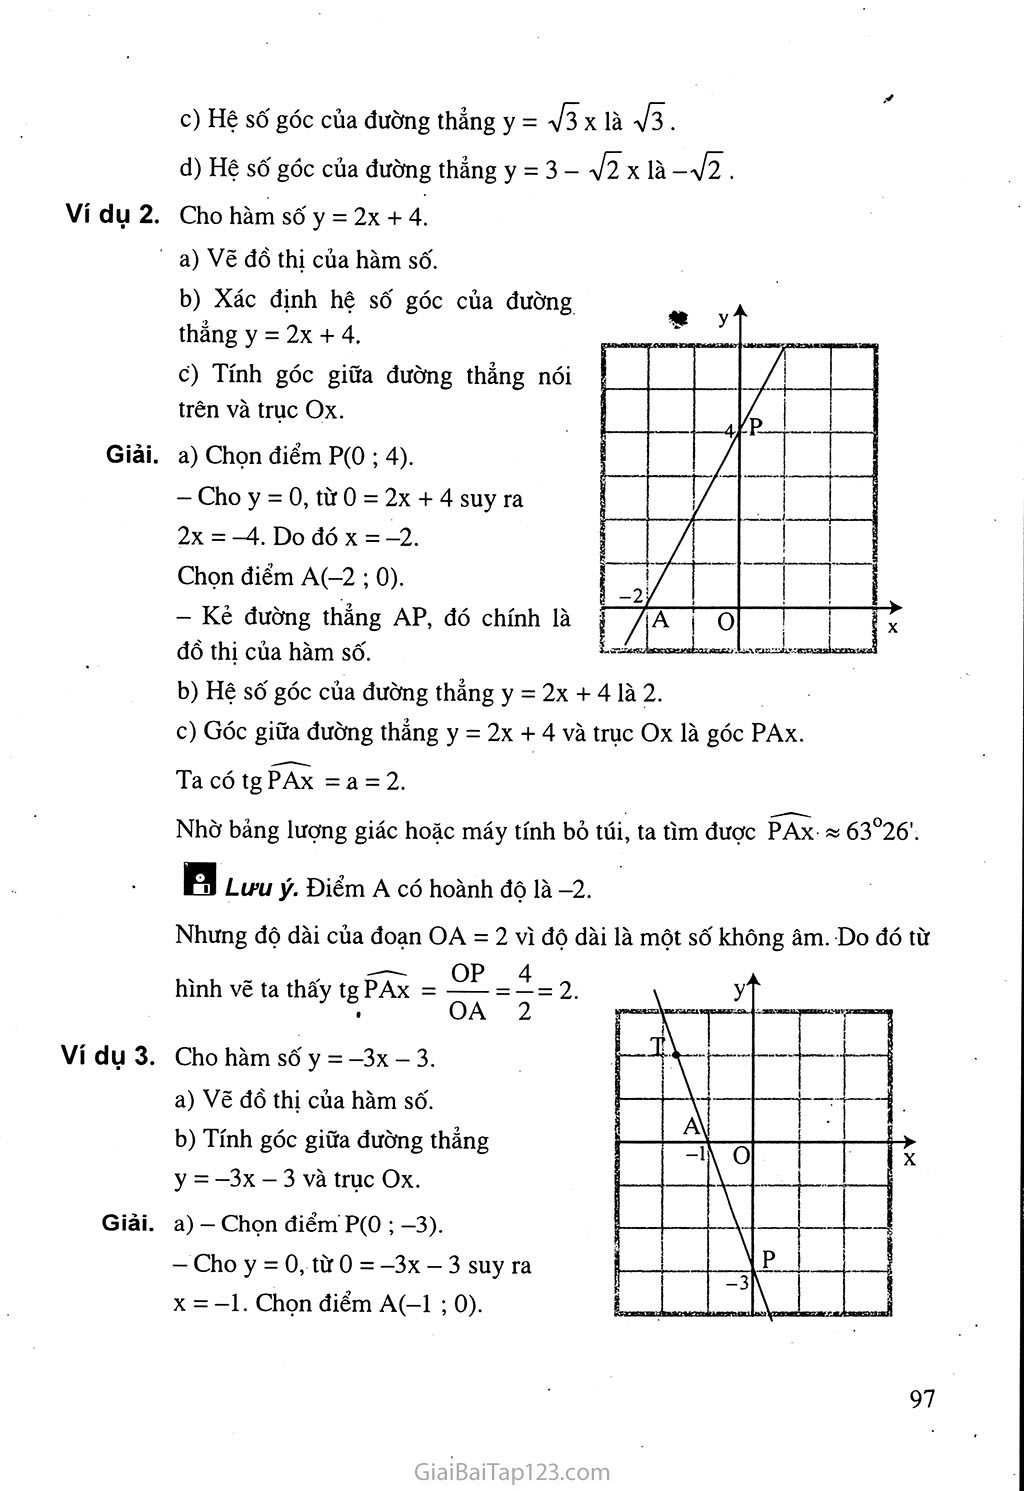 Bài 5. Hệ số góc của đường thẳng y = ax + b (a khác 0) trang 3